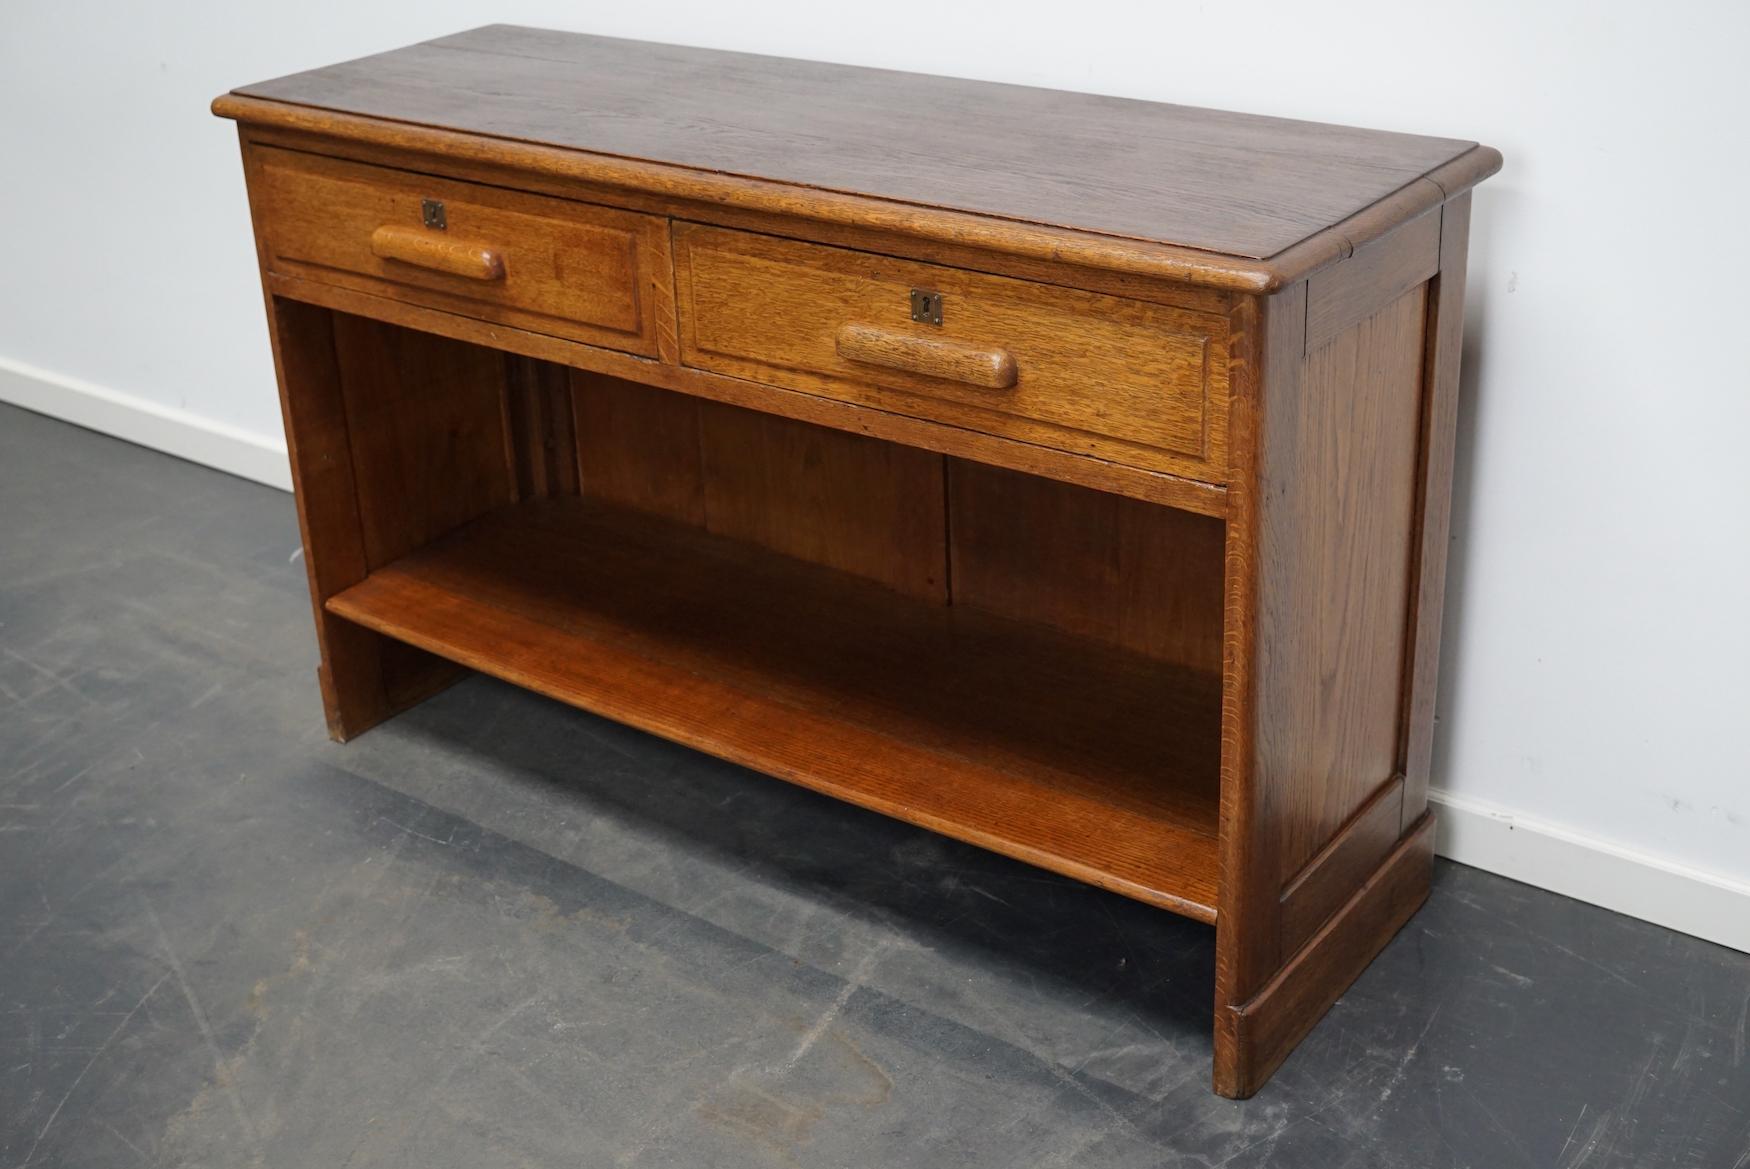 Dieser Ladentisch aus Eichenholz wurde in den 1930er Jahren in Deutschland hergestellt. Er war sehr gut verarbeitet und befindet sich in einem guten antiken Zustand. Die Innenmaße der Schubladen sind: D B H 31 x 53 x 12 cm.